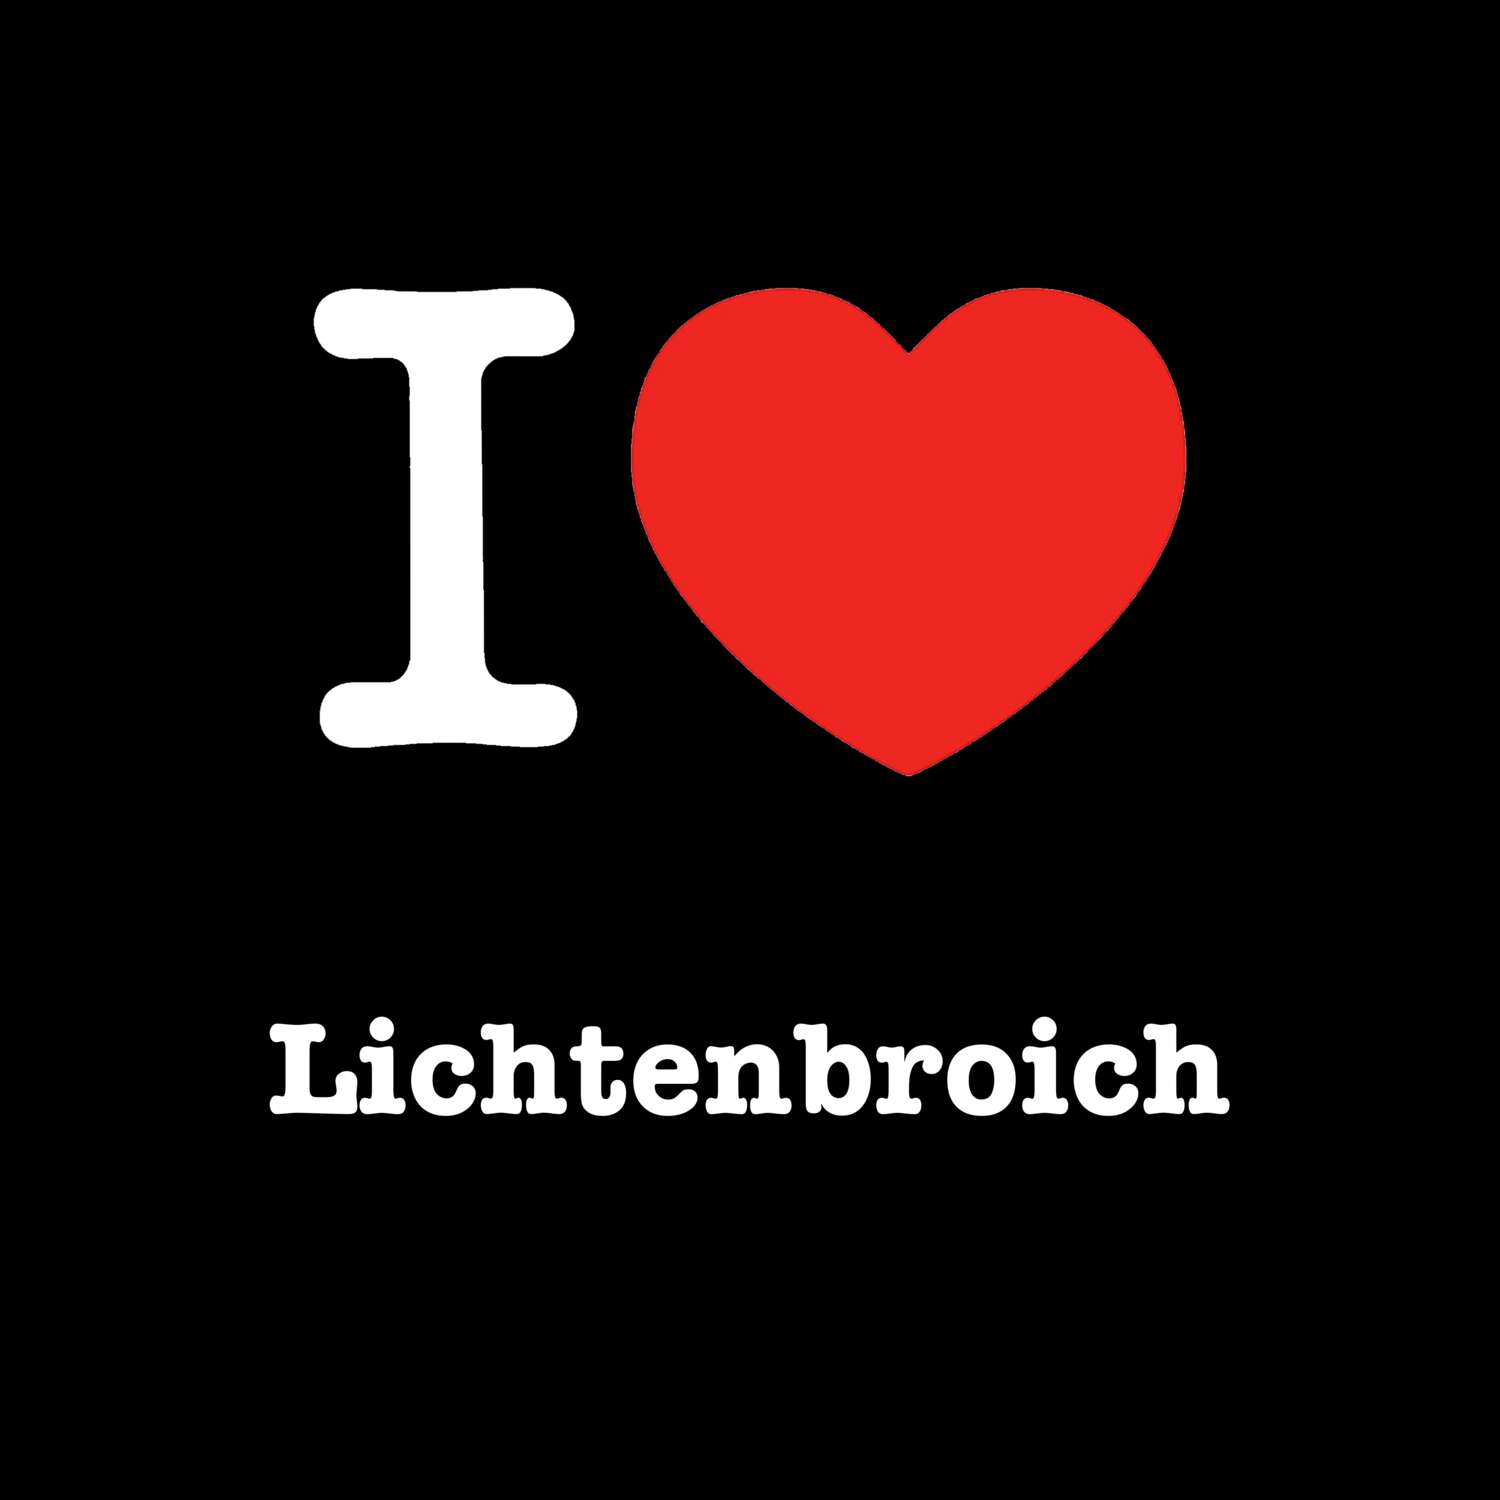 Lichtenbroich T-Shirt »I love«